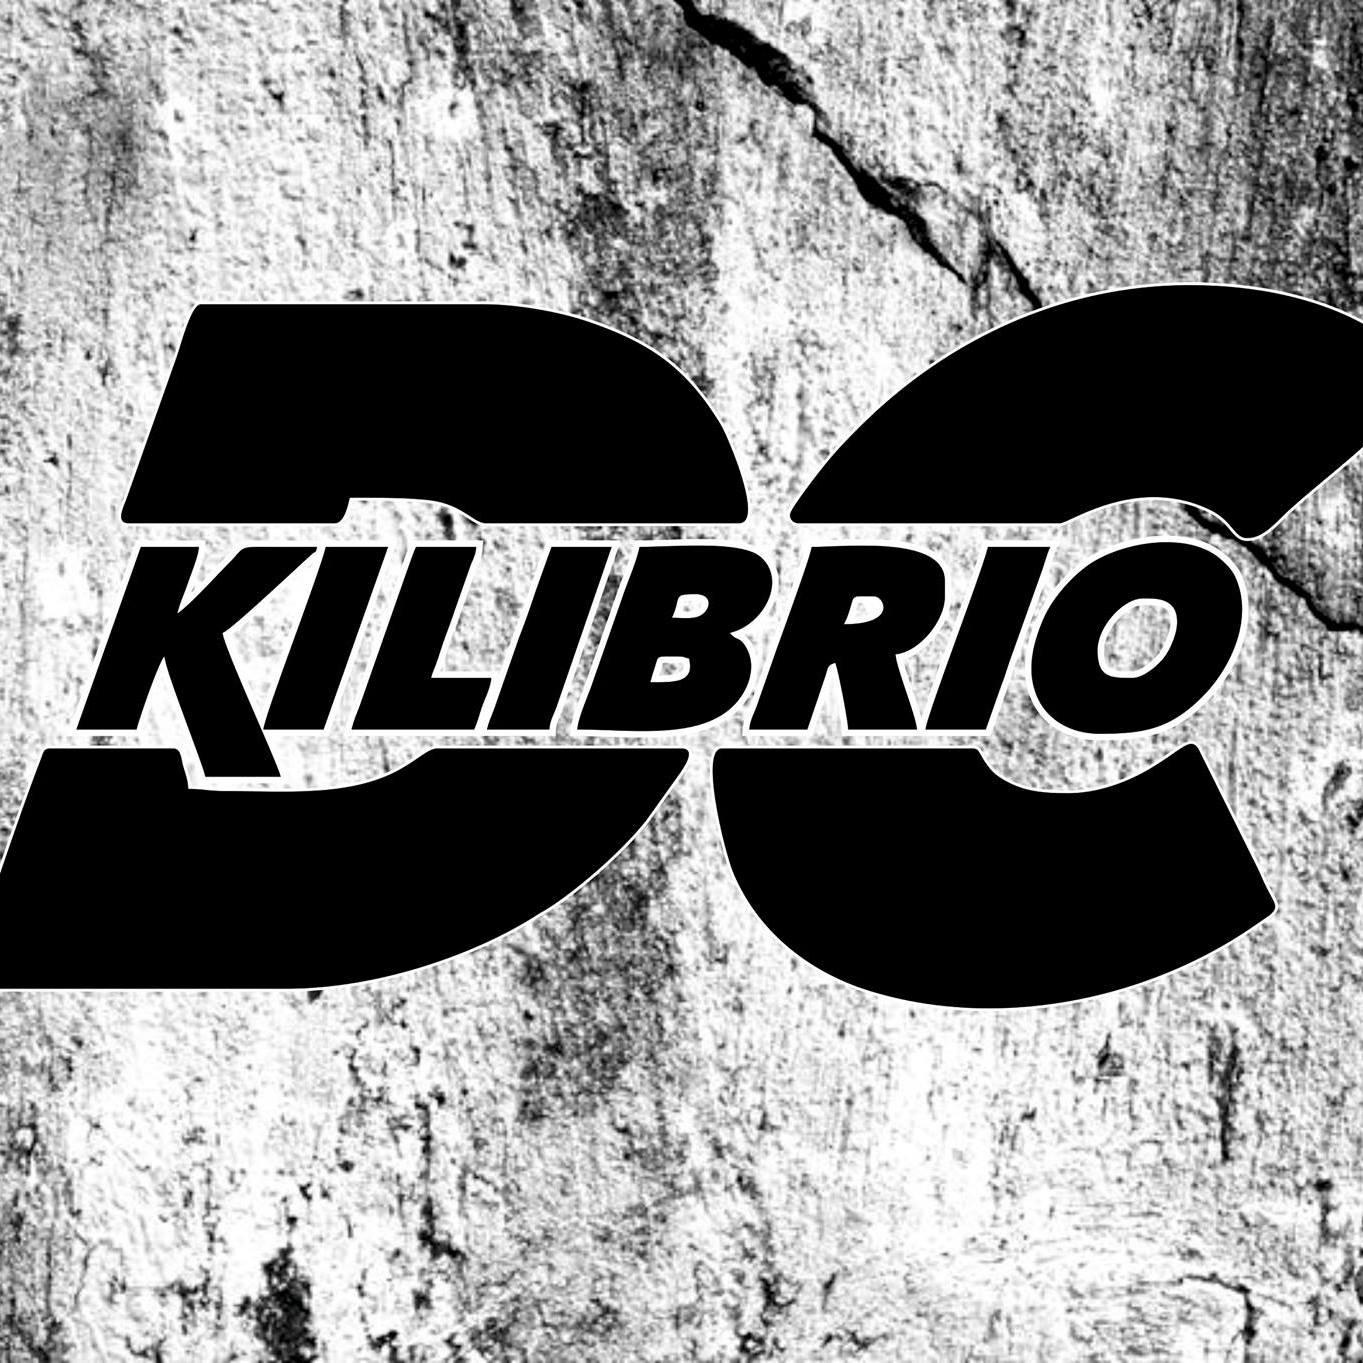 DC-Kilibrio